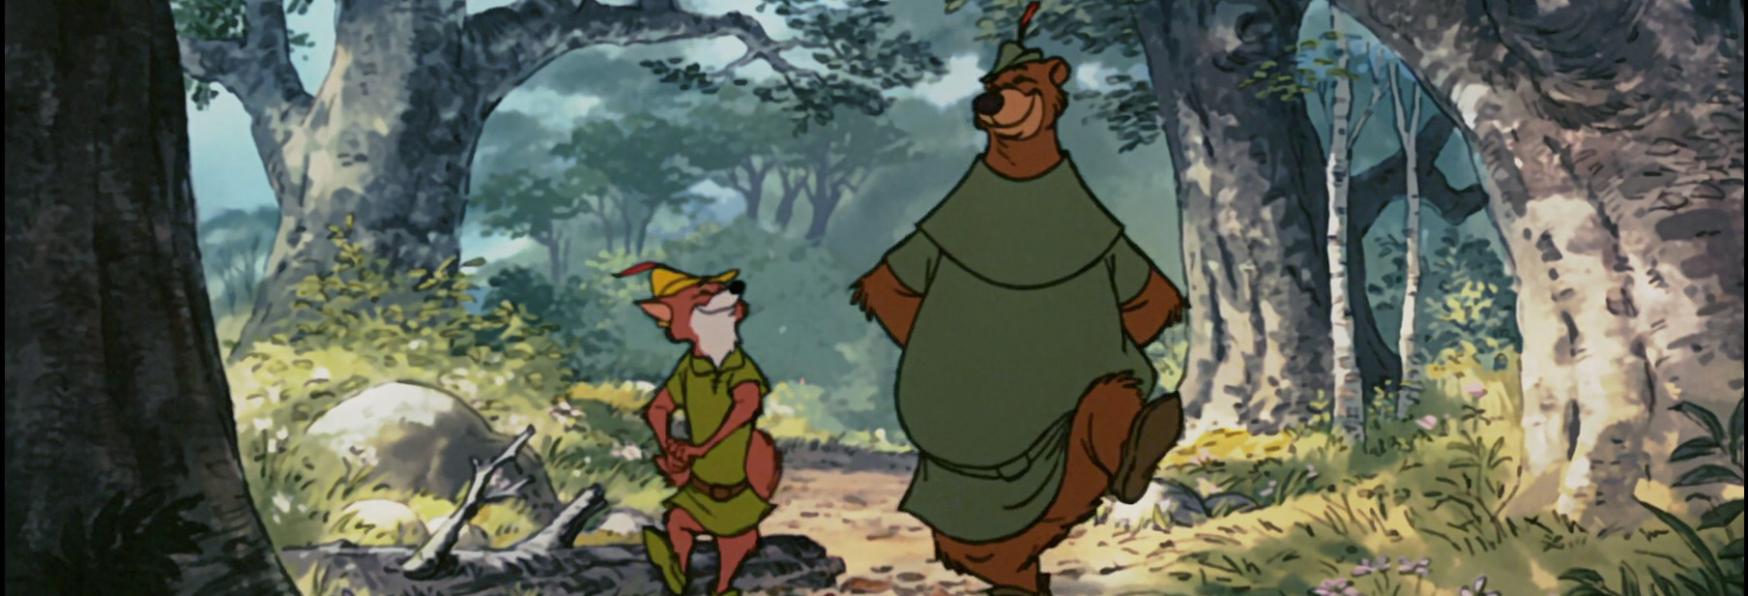 In arrivo una Serie TV di Robin Hood in cui il Protagonista sarà una Donna